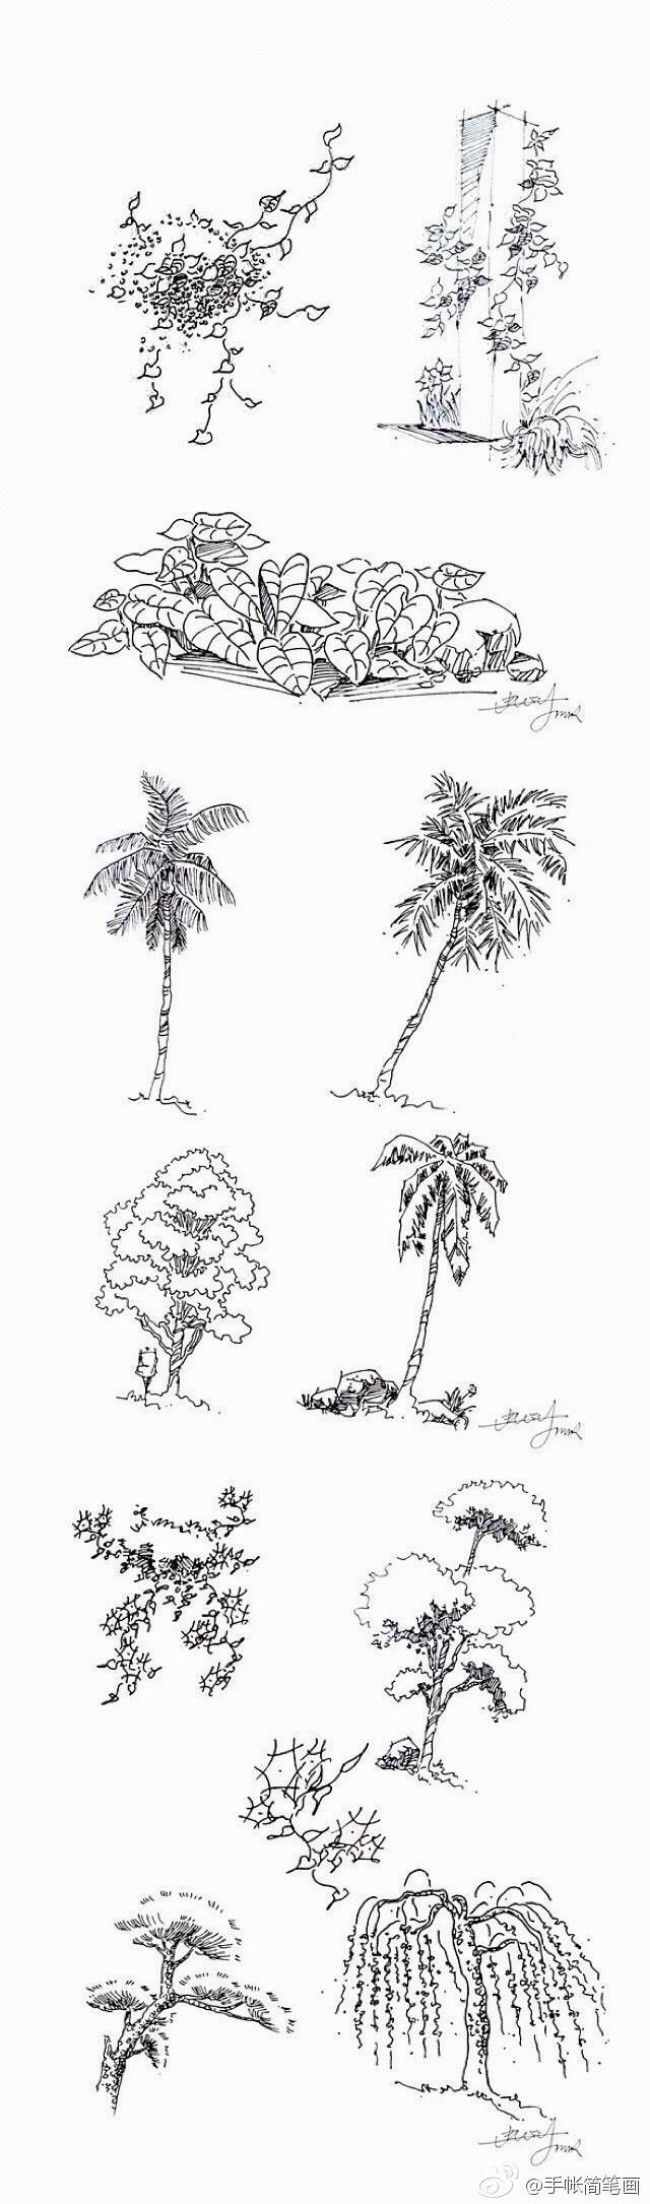 常见植物的线稿简笔画素材带植物名称可以作为景观设计线描手法素材